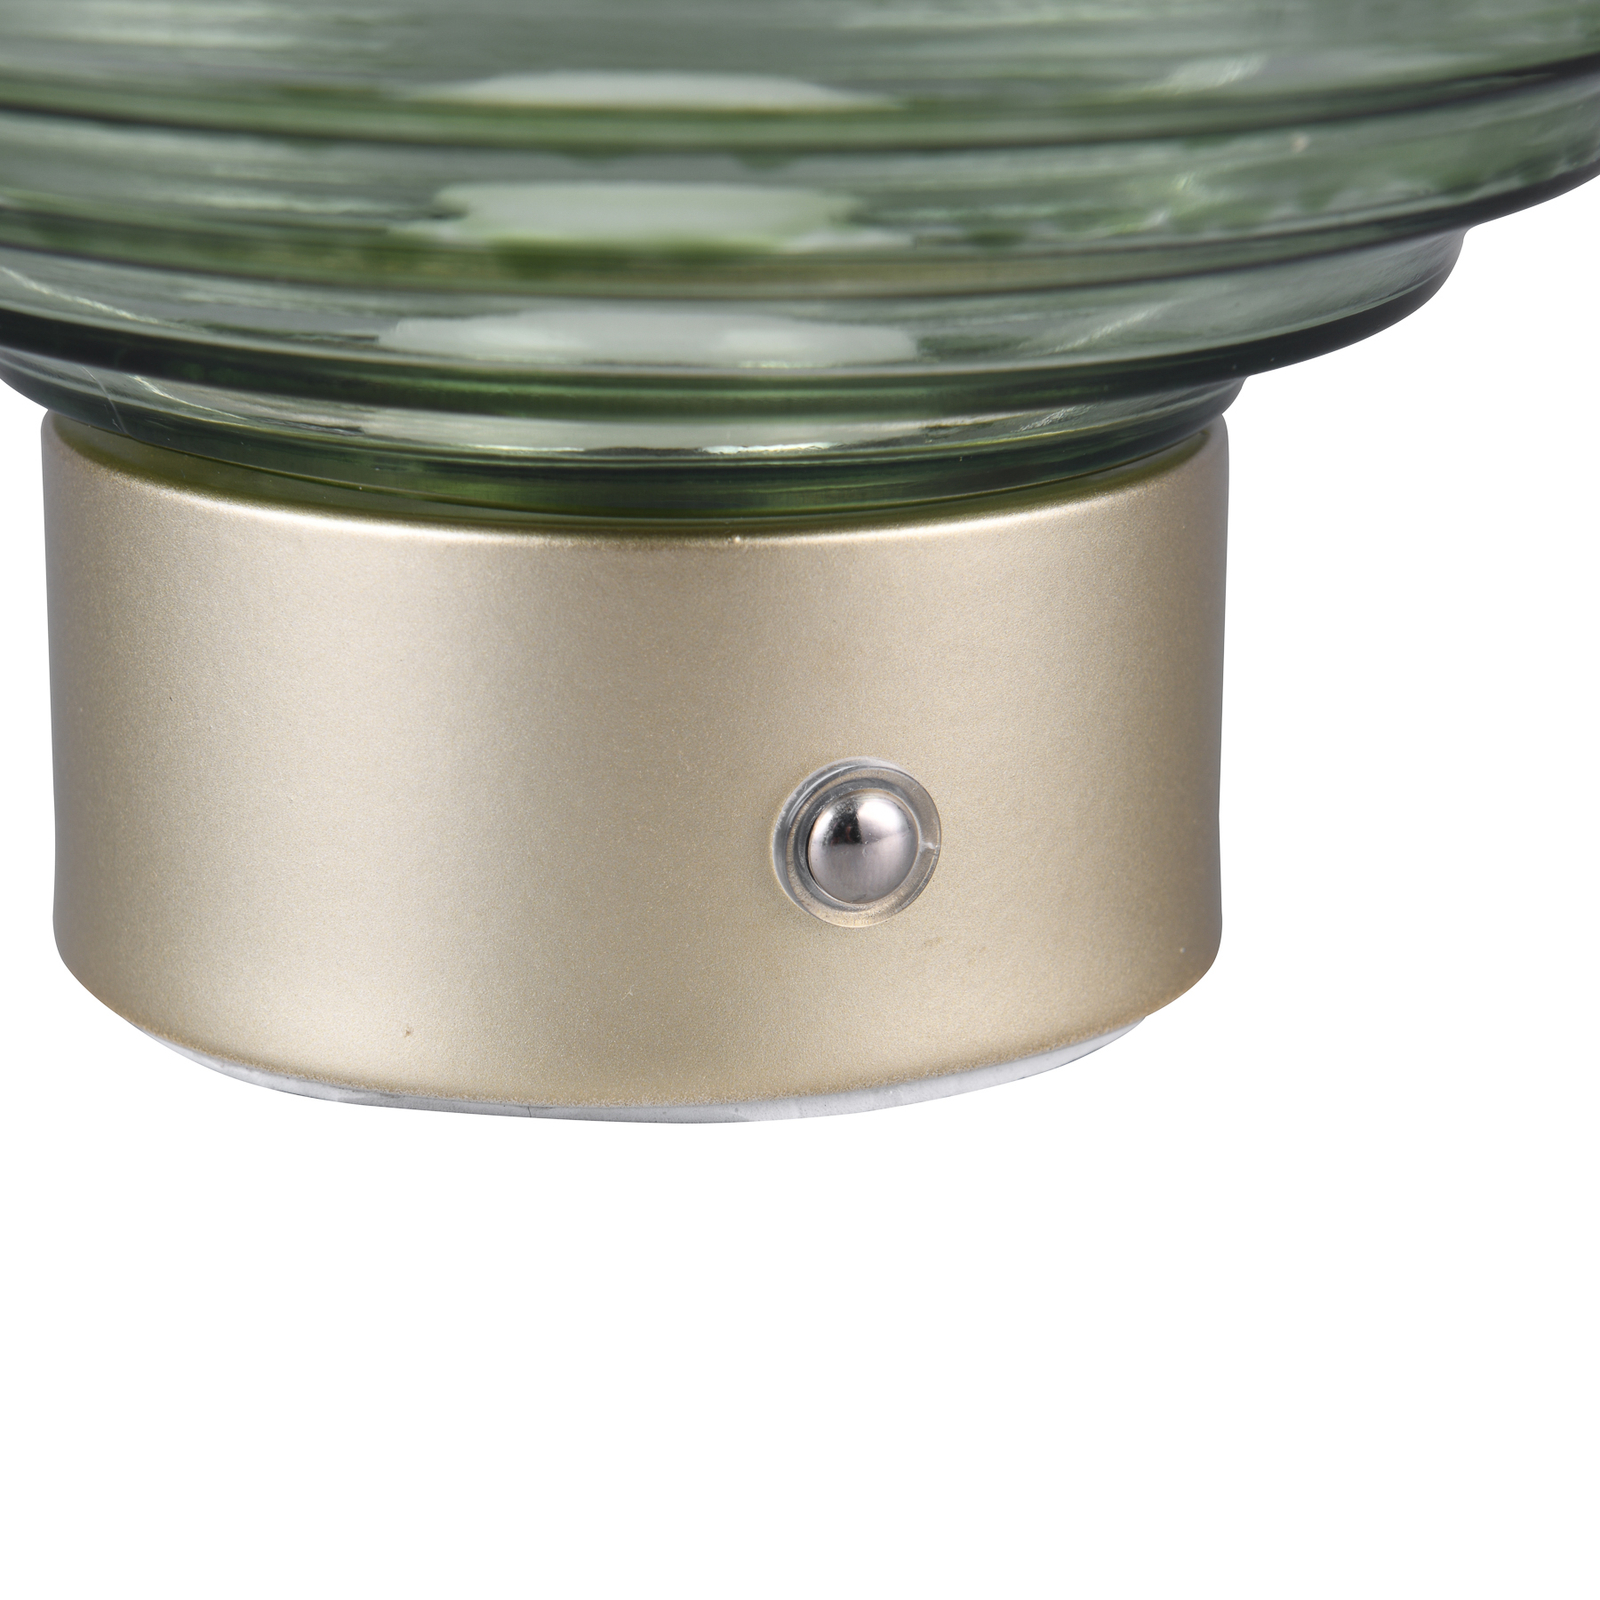 Earl LED oppladbar bordlampe, messing/grønn, høyde 14,5 cm, glass